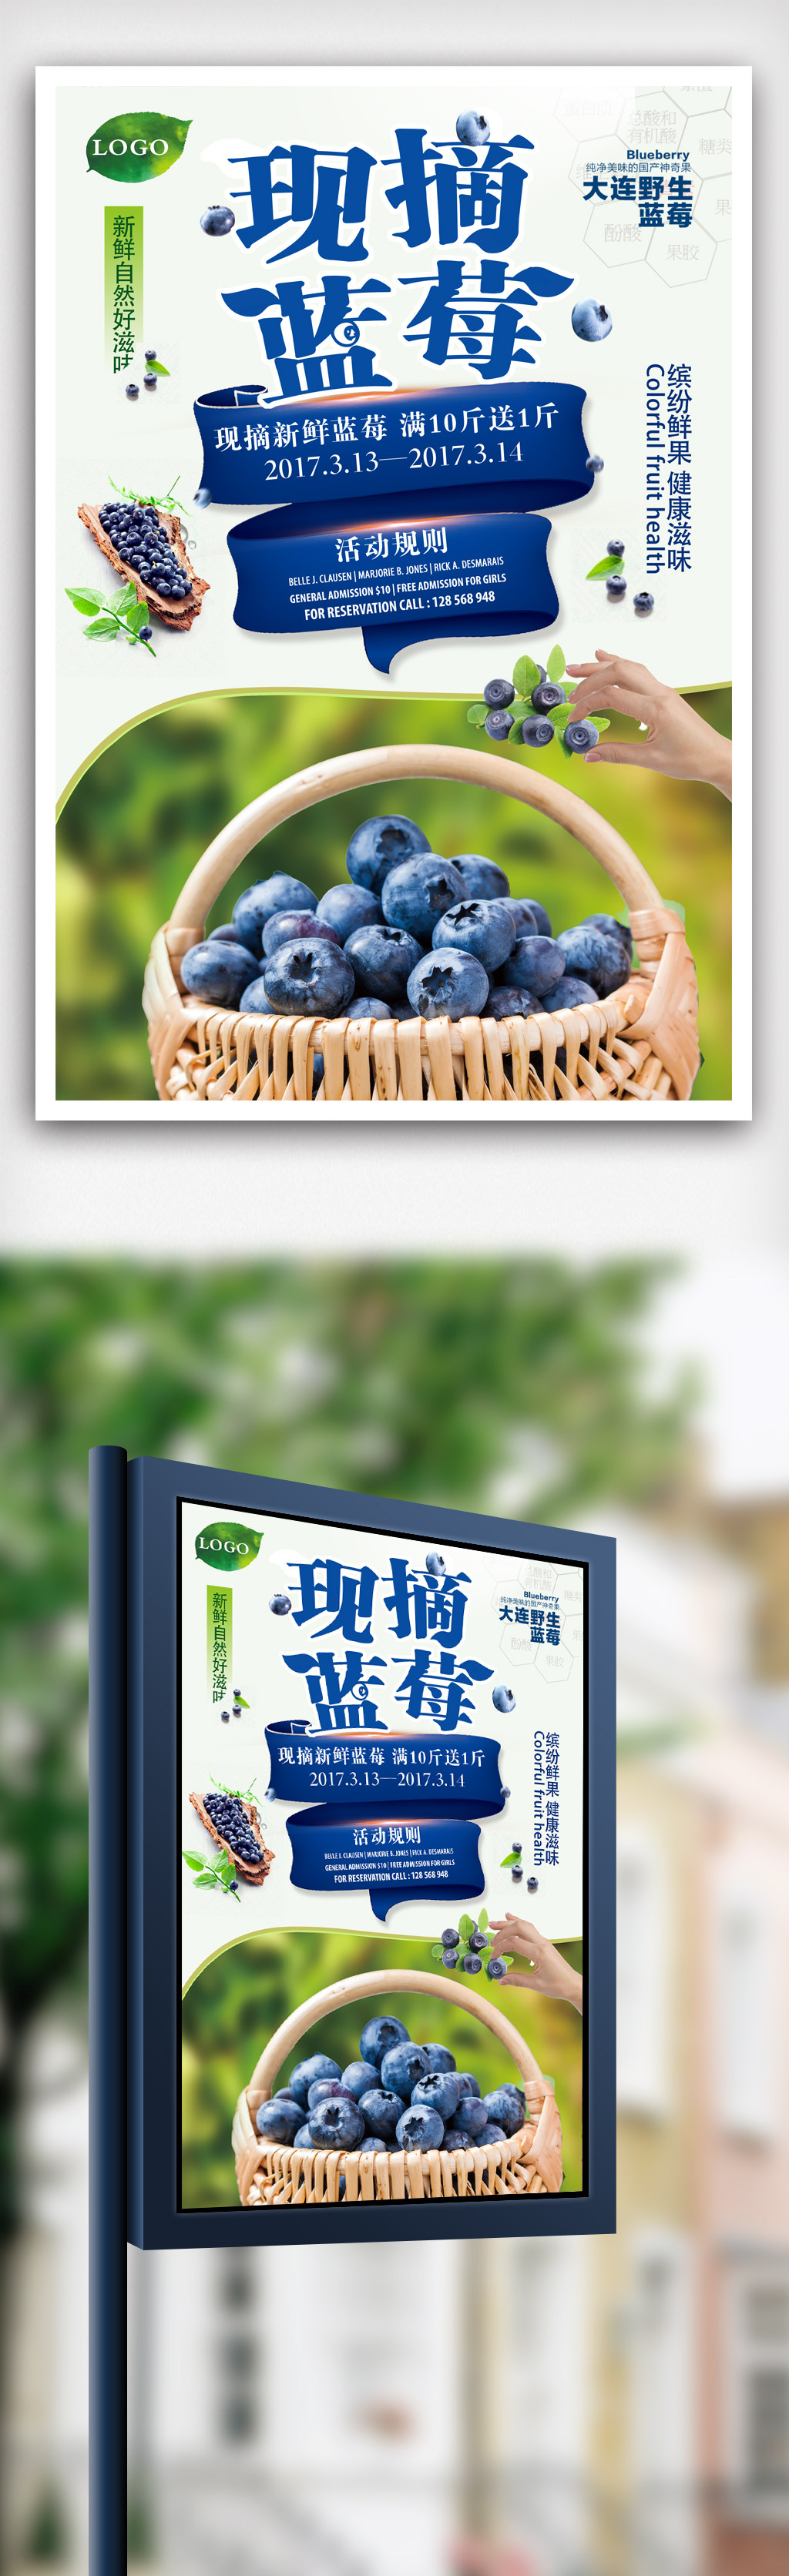 简约大气蓝莓水果海报.psd图片